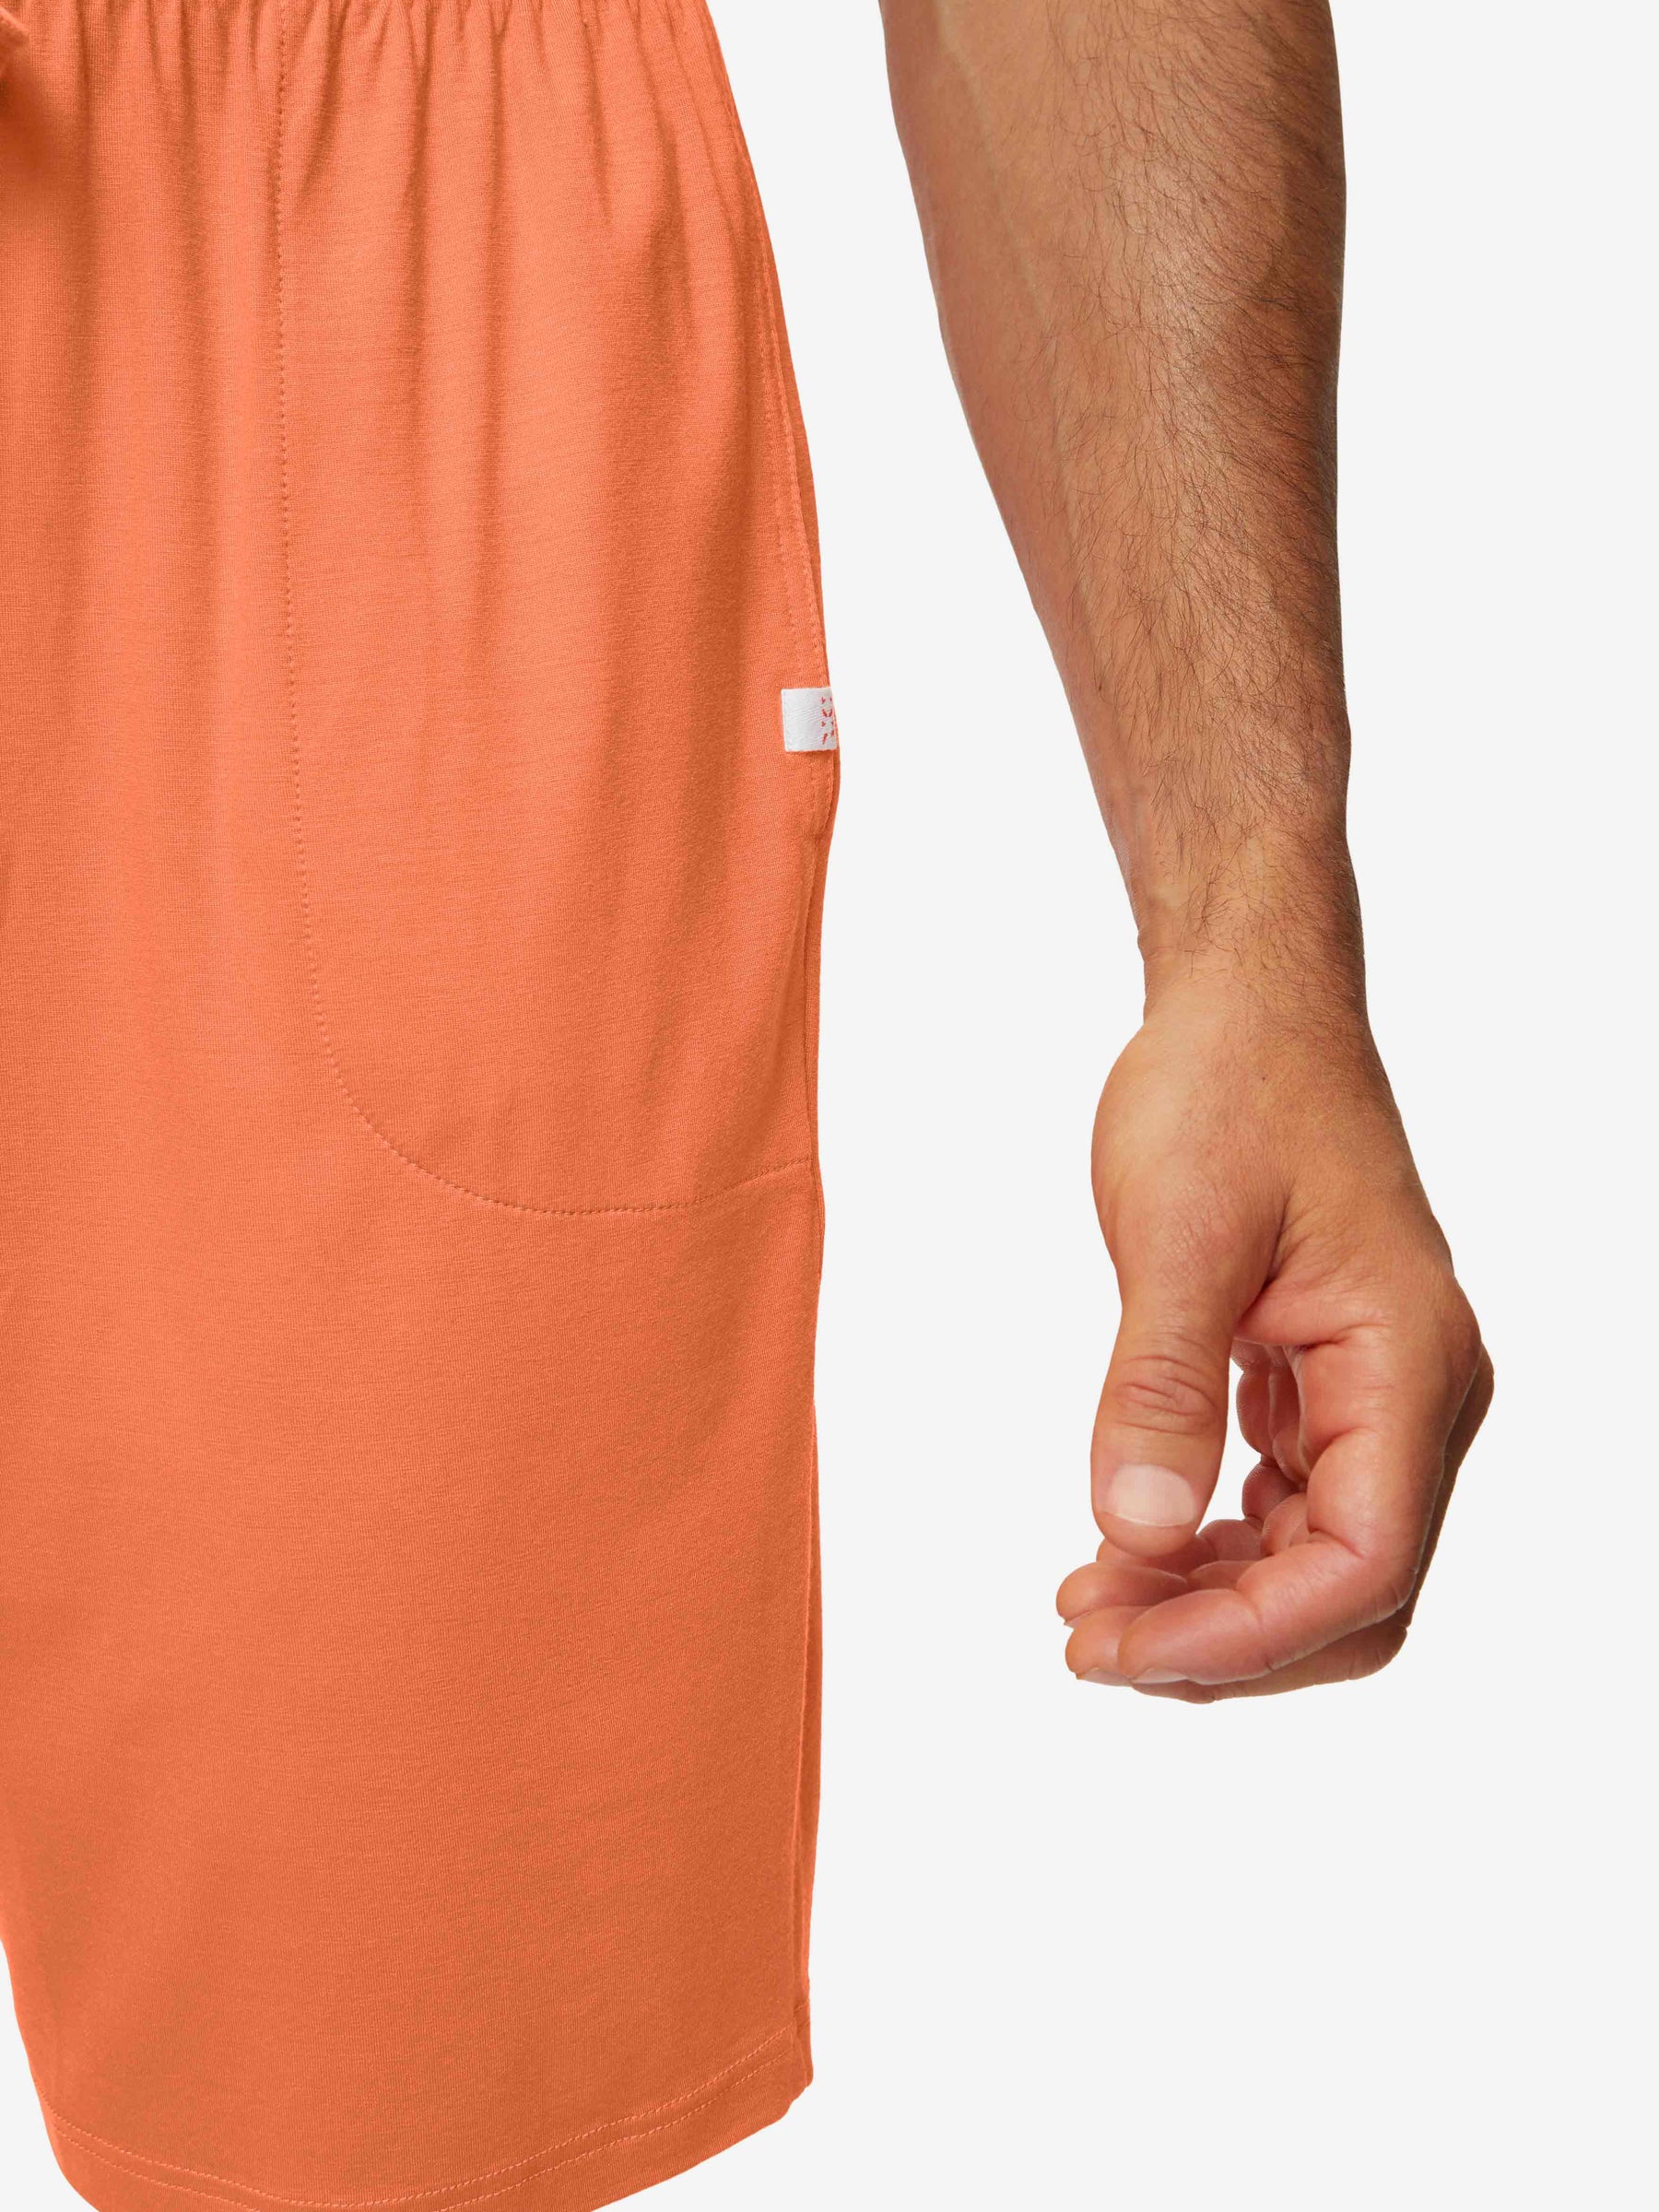 Men's Lounge Shorts Basel Micro Modal Stretch Orange